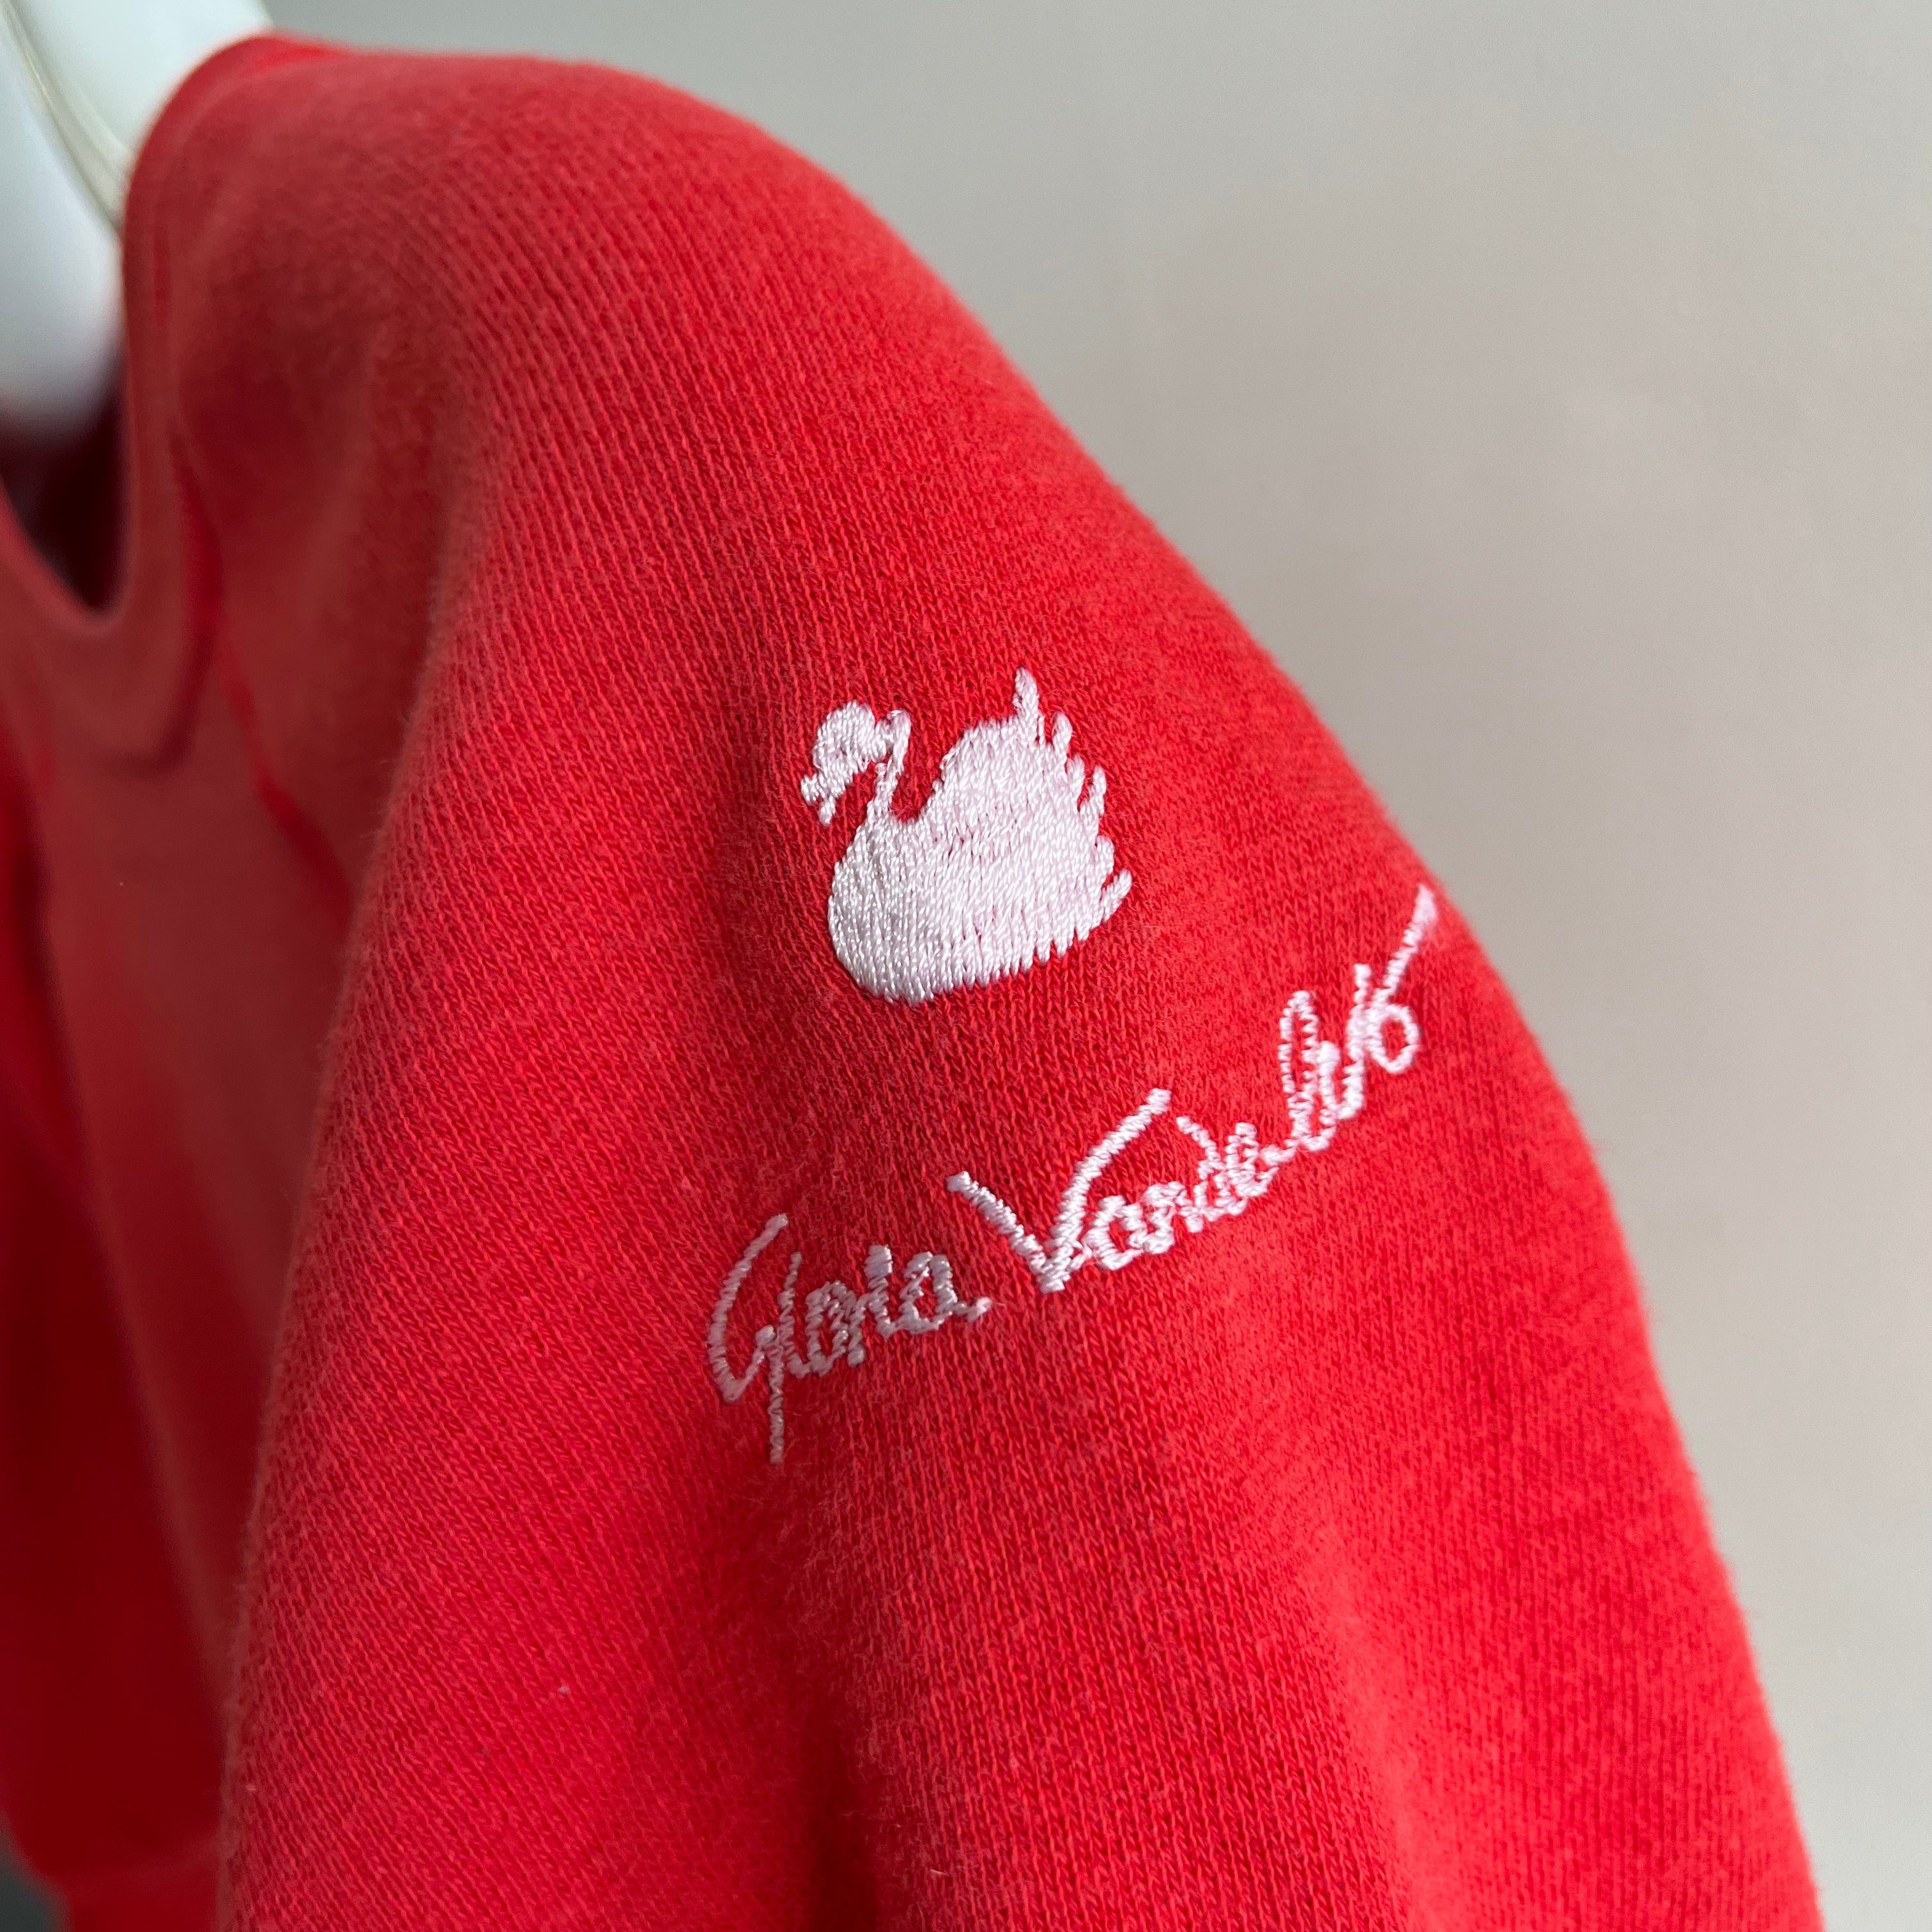 Sweat Gloria Vanderbilt XS des années 1980 principalement en coton